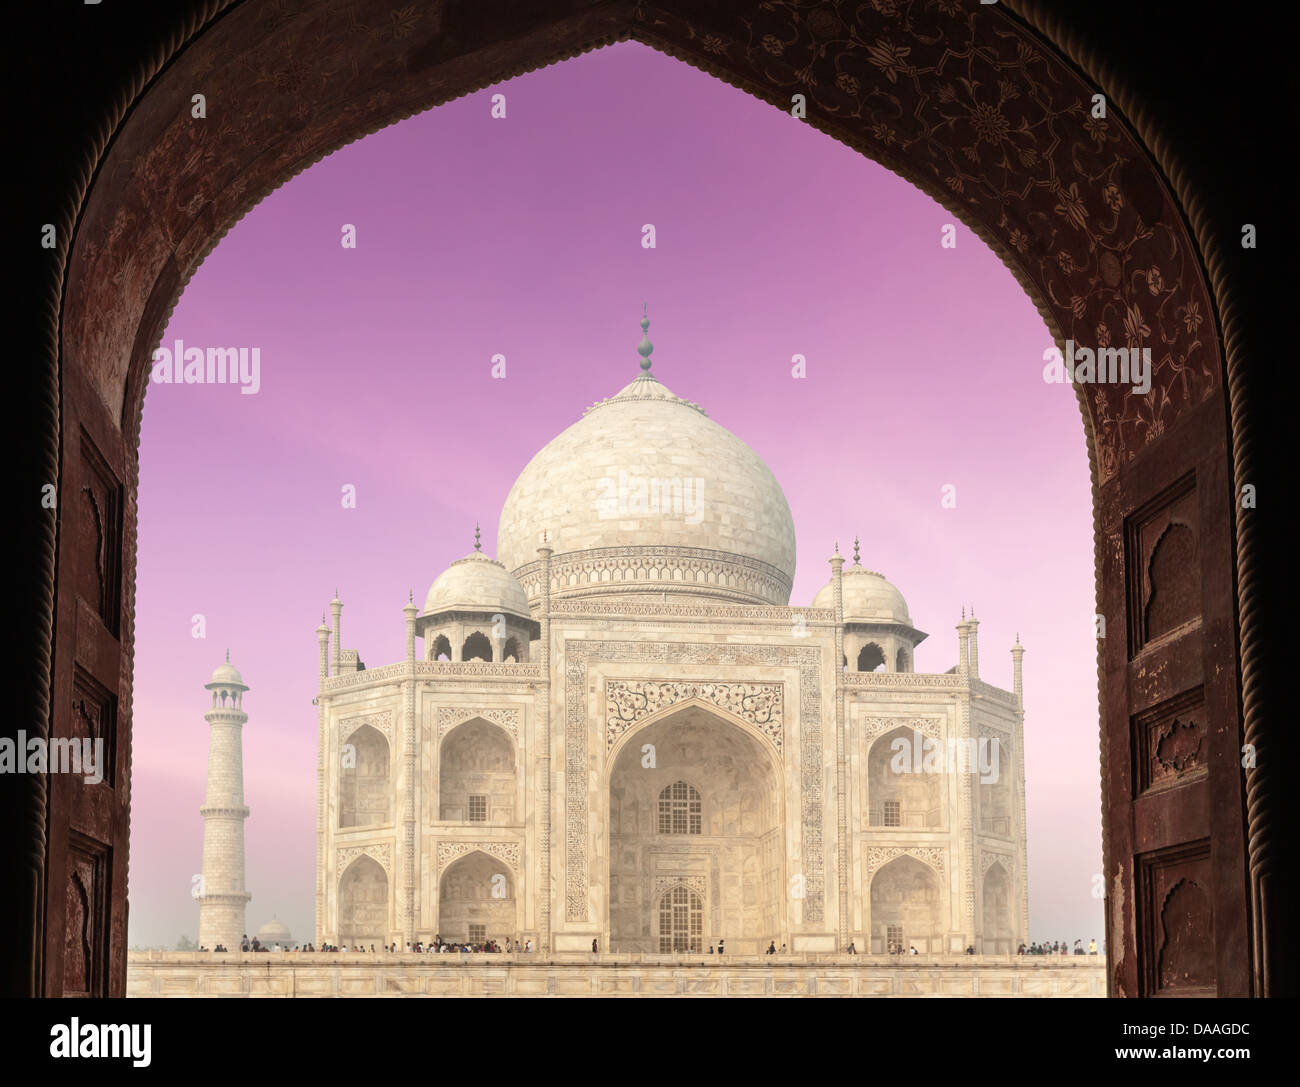 Taj Mahal par arch, symbole indien - Inde billet d'arrière-plan. Agra, Uttar Pradesh, Inde Banque D'Images